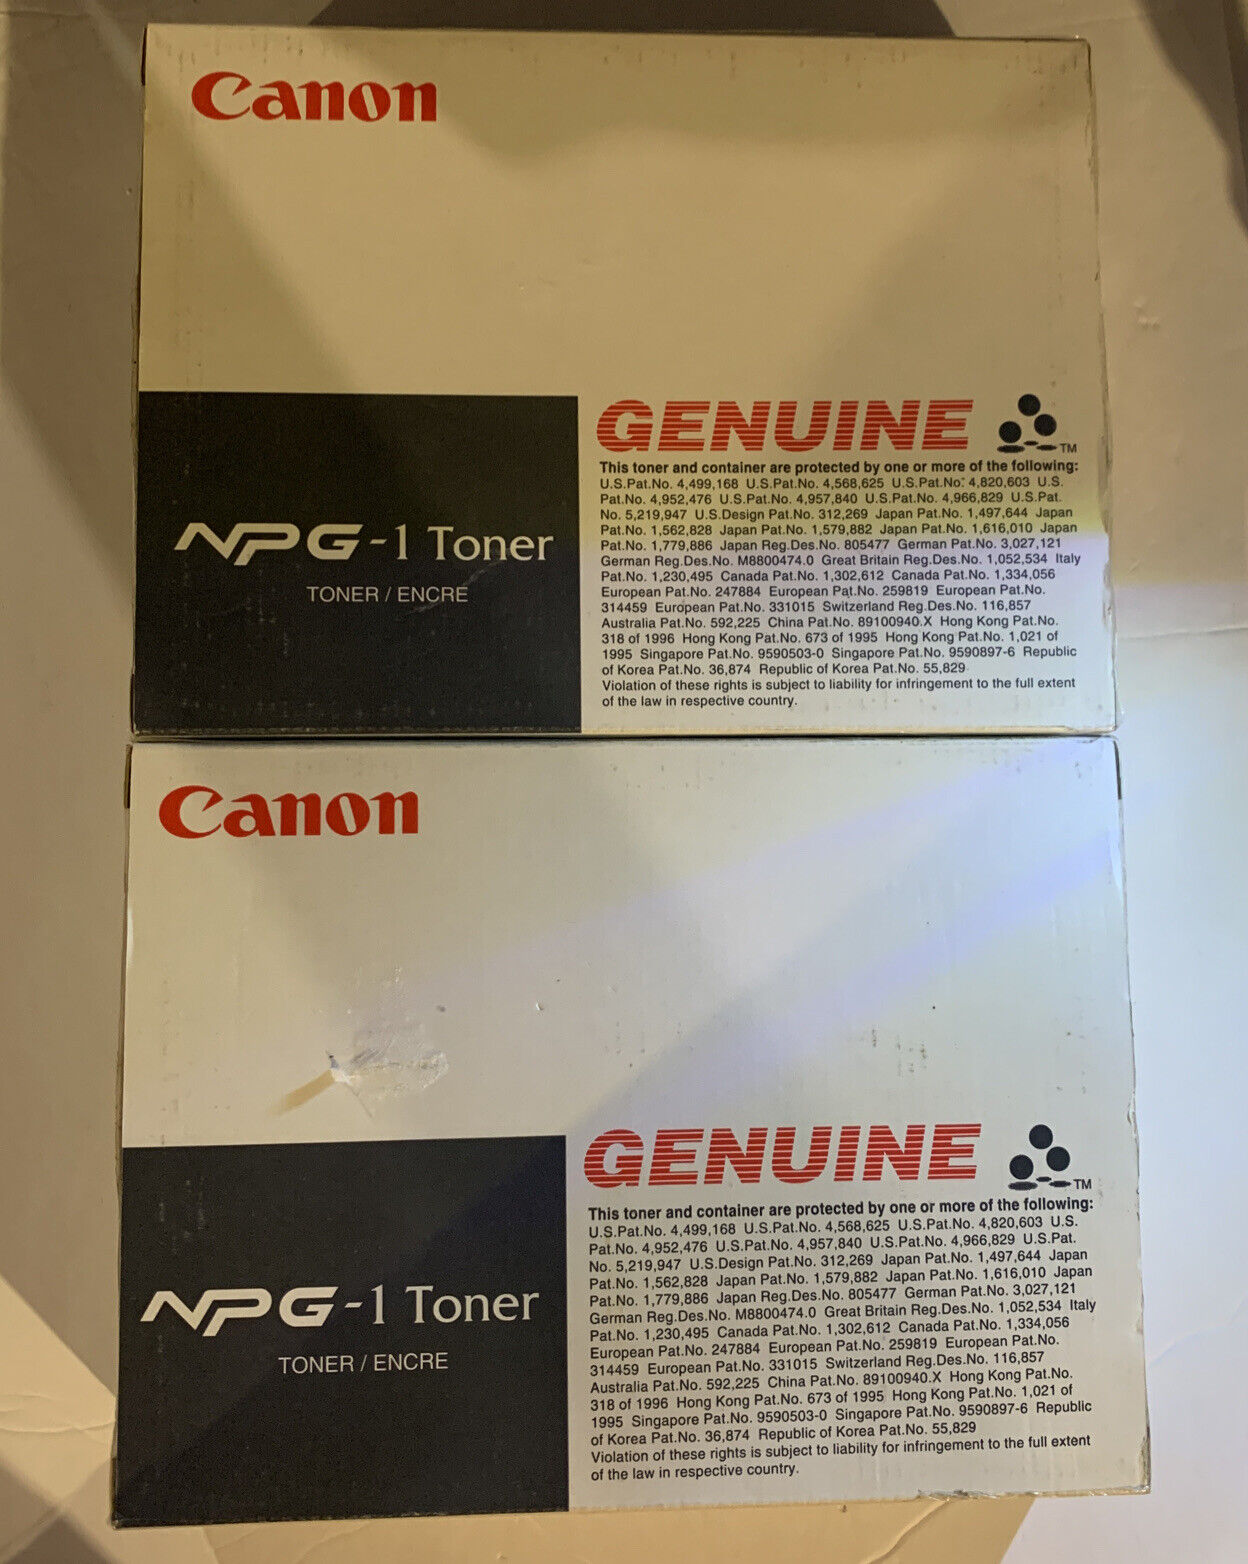 Canon Genuine NPG-1 Toner Black F41-5902-104 2 boxes, 8 total toners